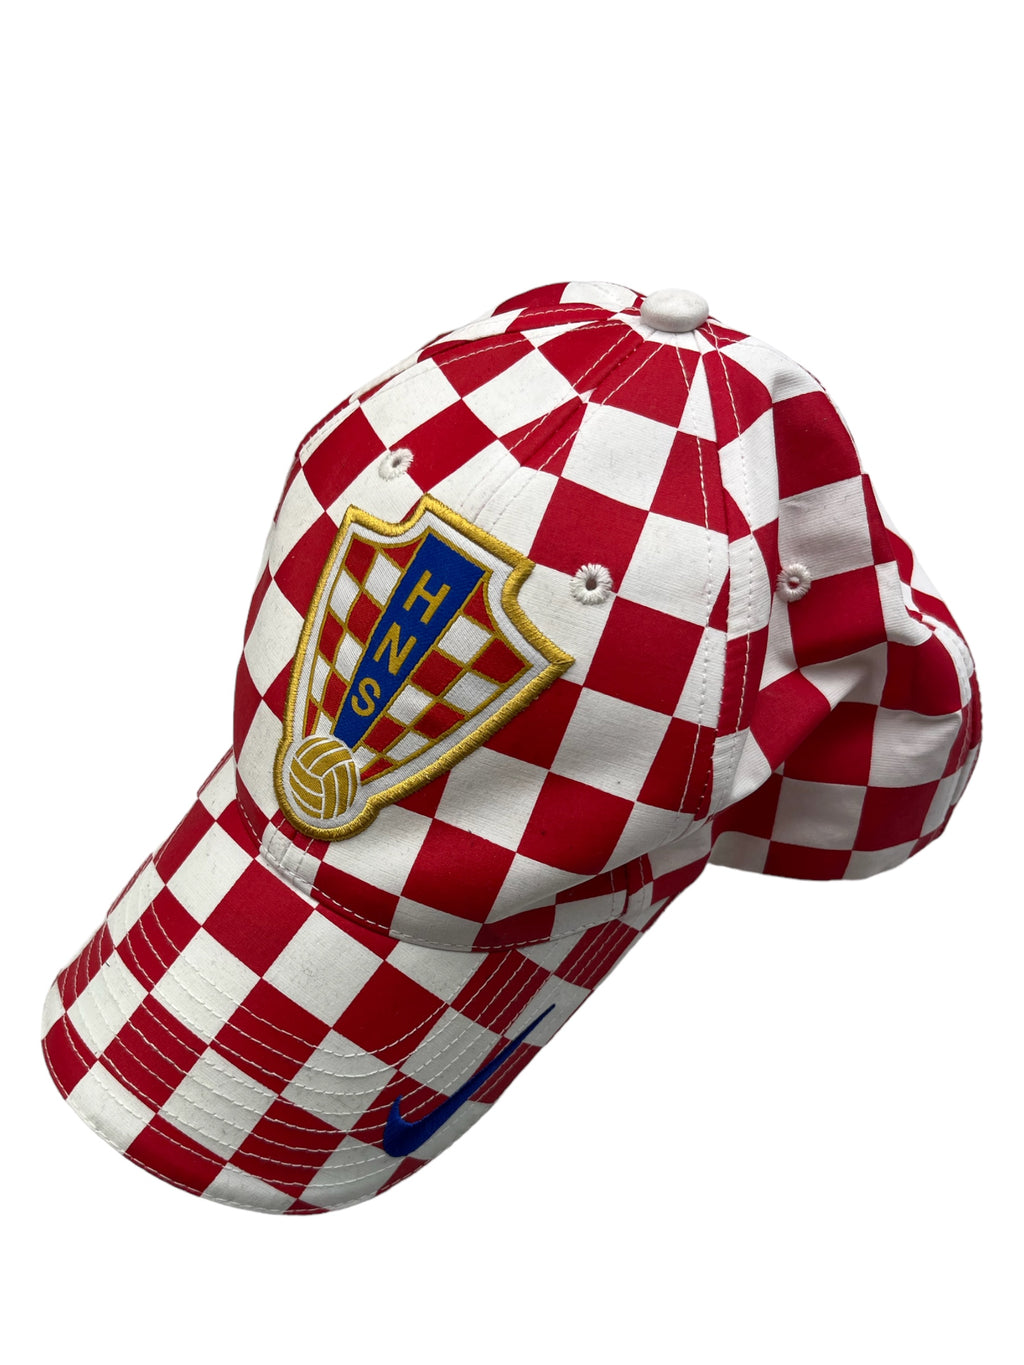 2007/09 Croatia Nike Cap (Adults) BNWT